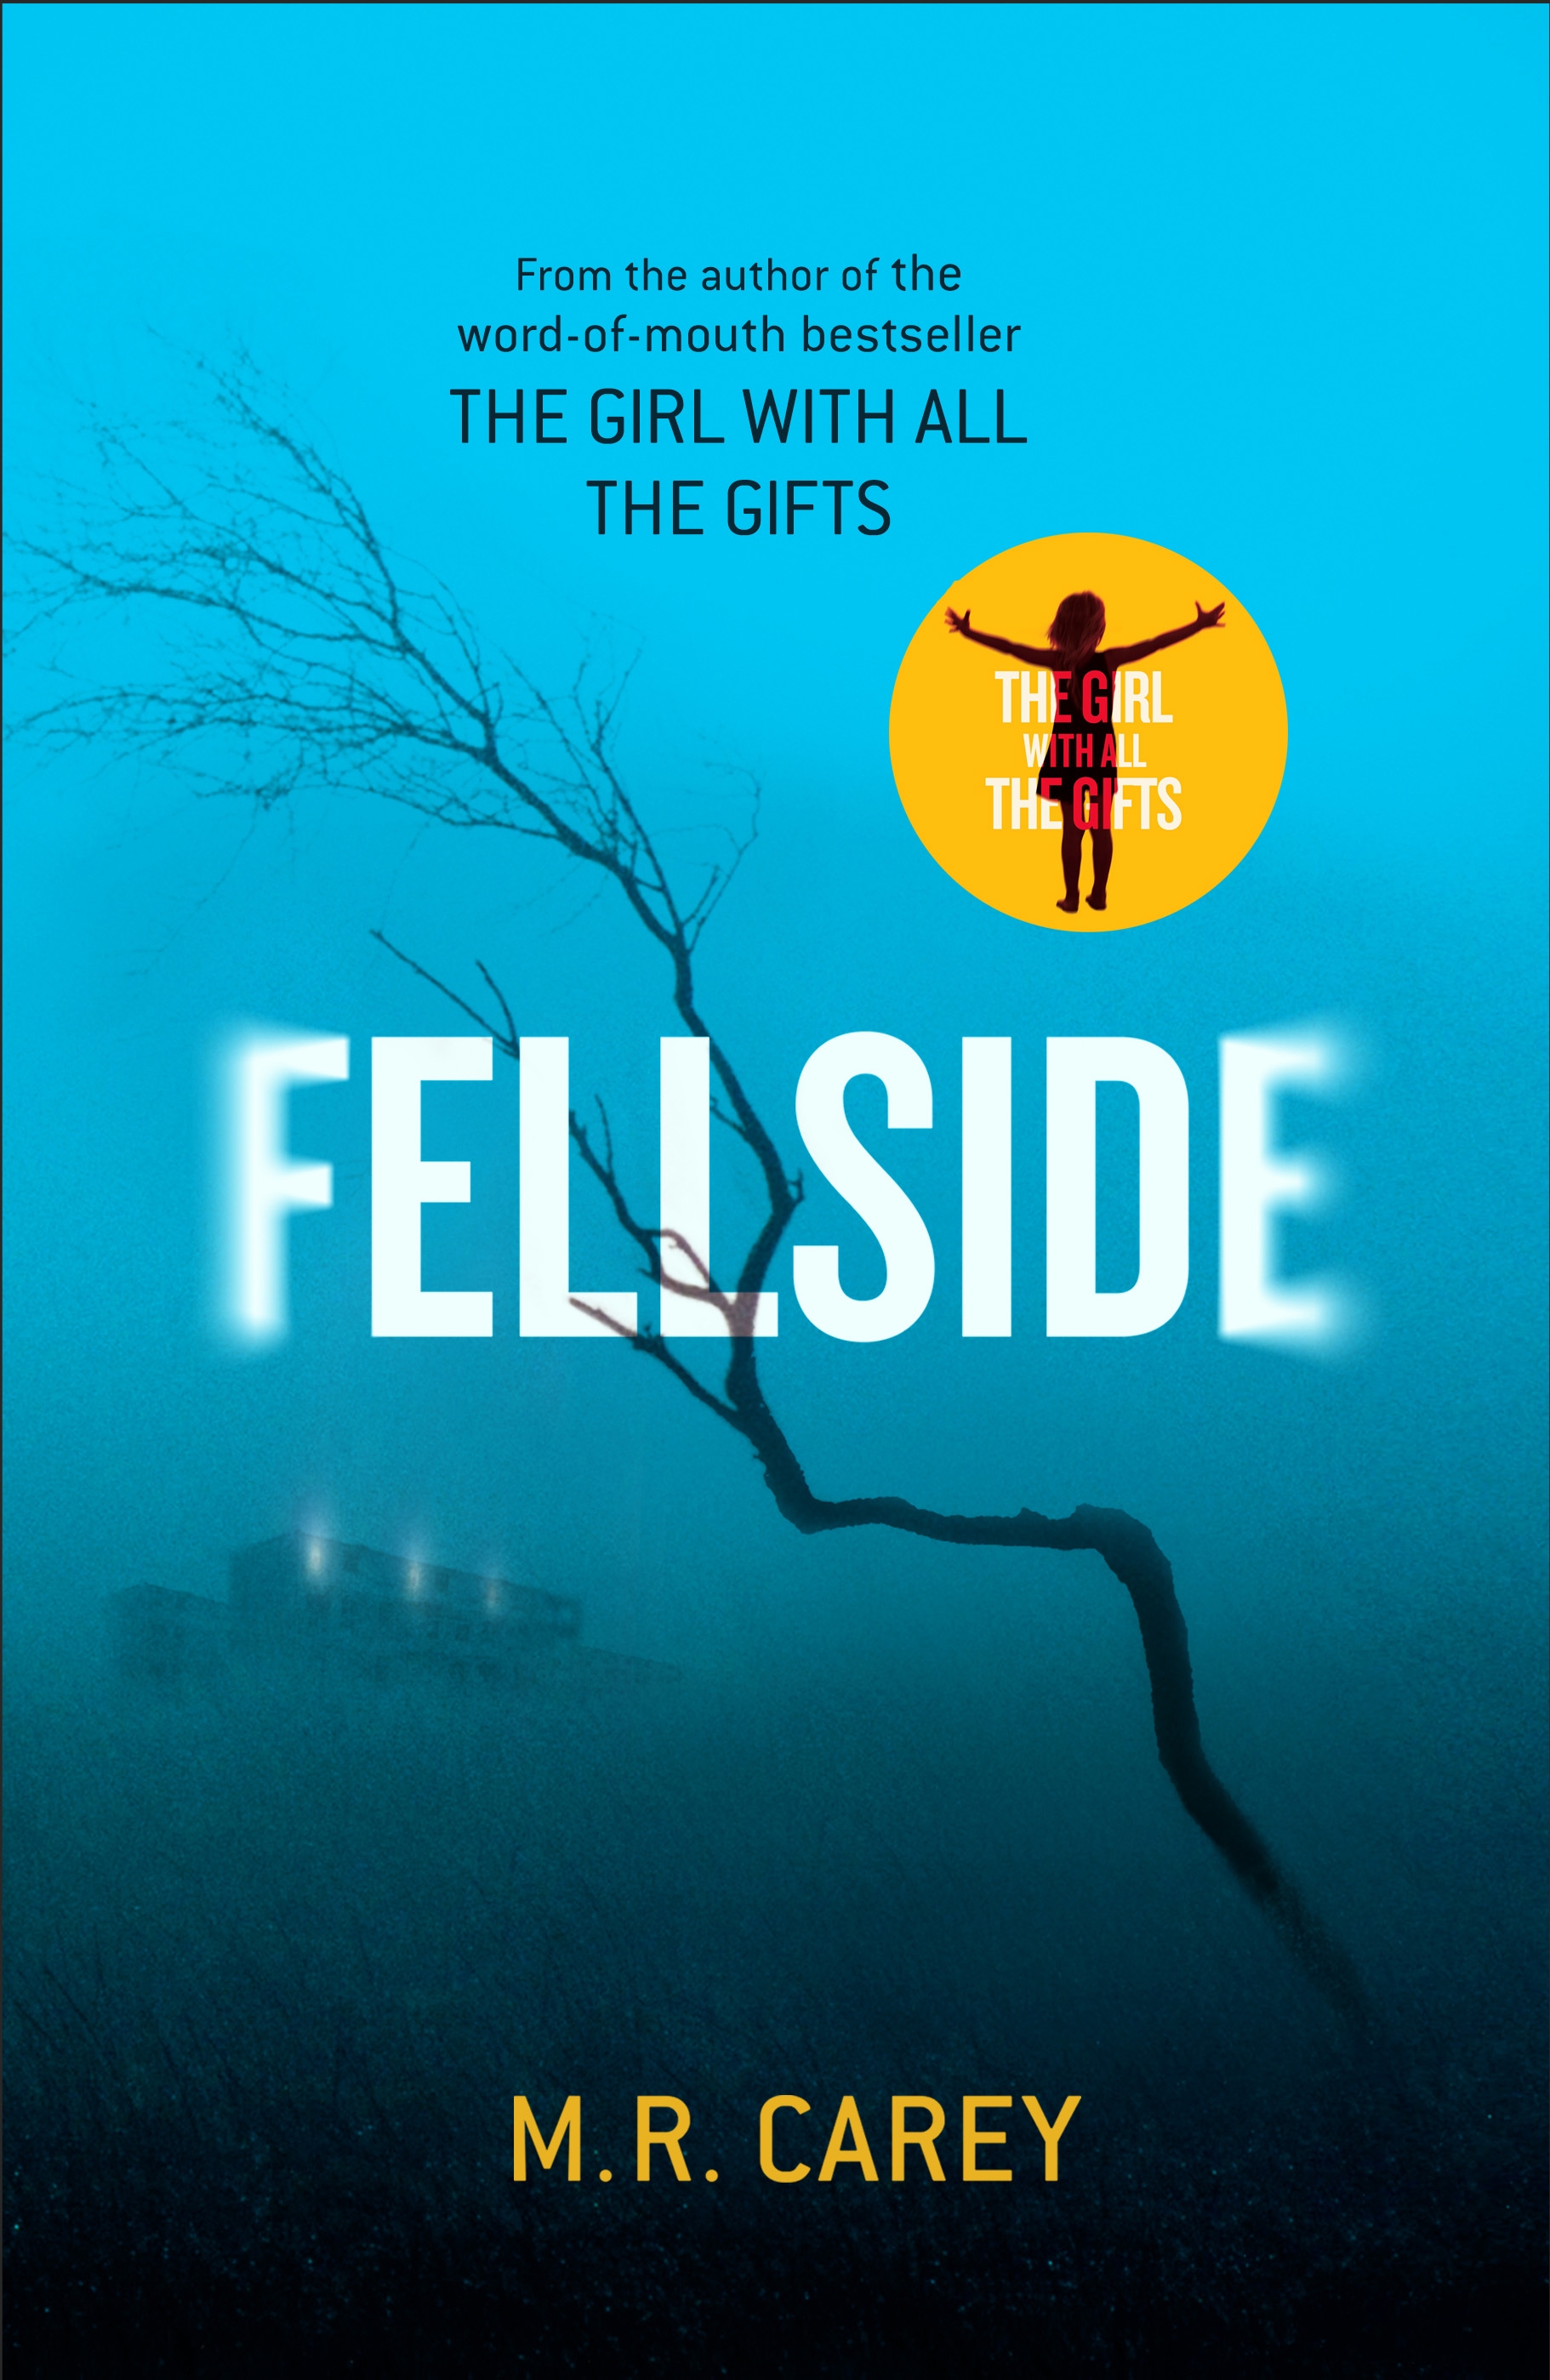 Friday Reads: Fellside by M.R. Carey